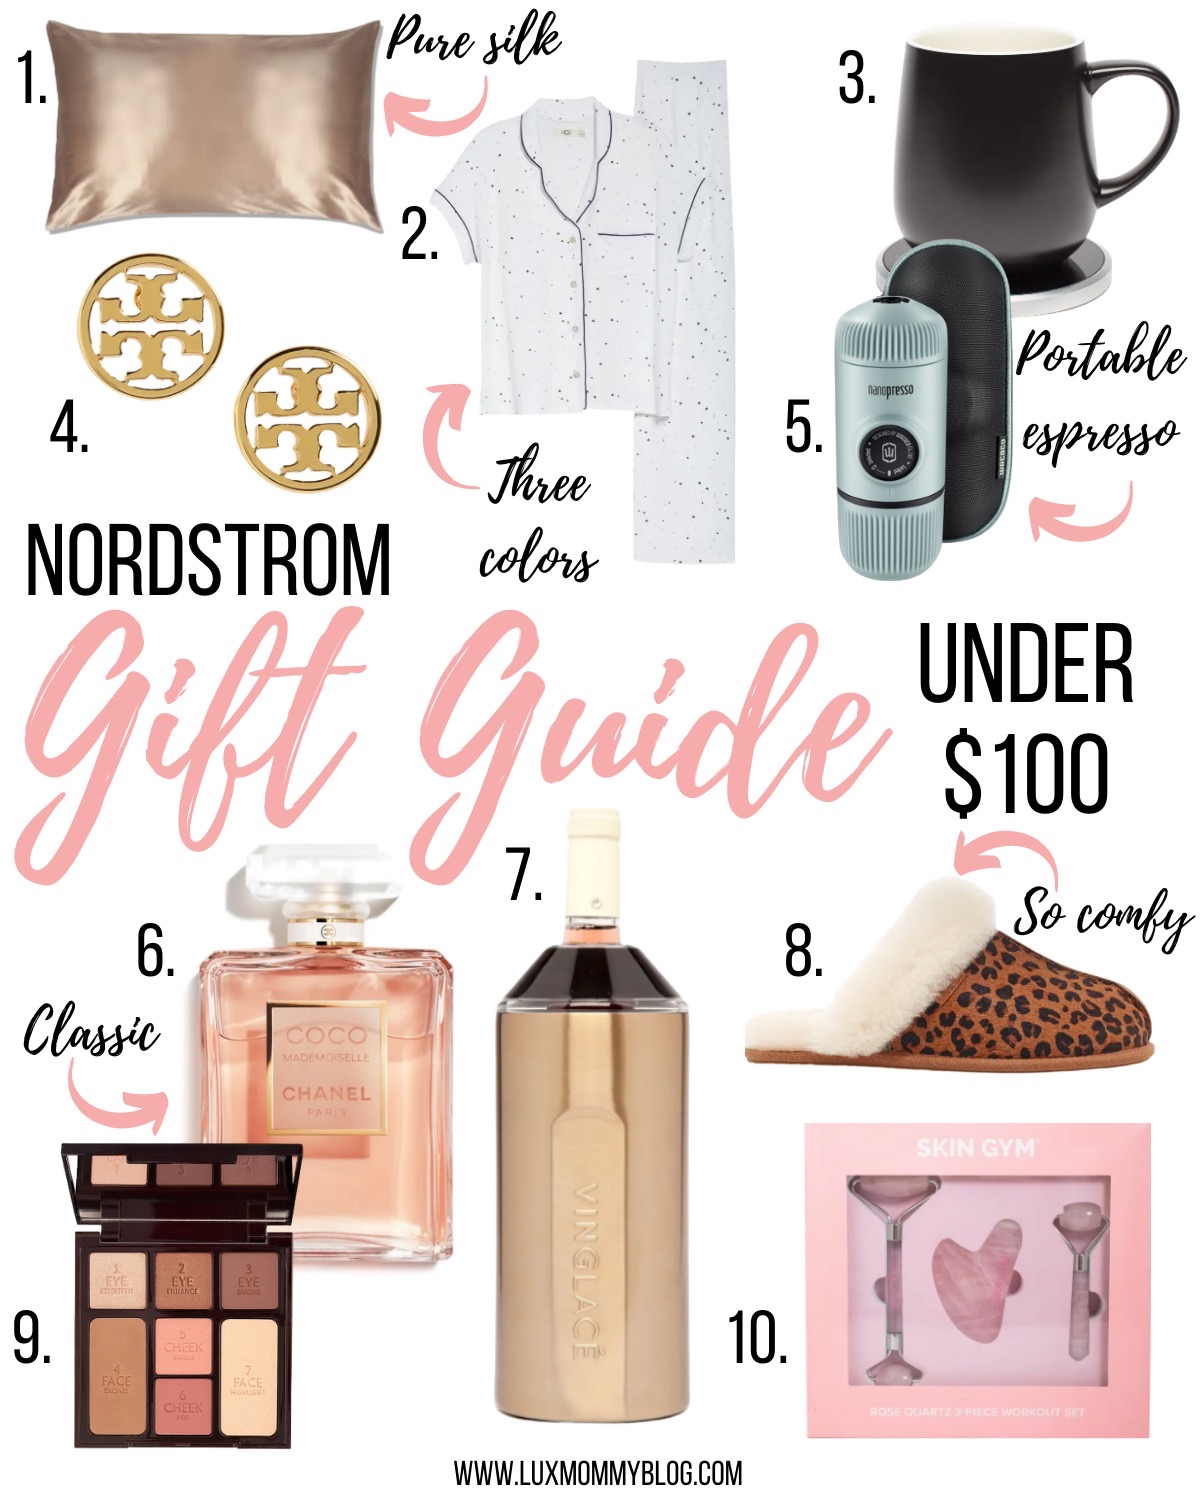 Gift Guide - Women's Fashion Gifts - The Sensible Shopaholic